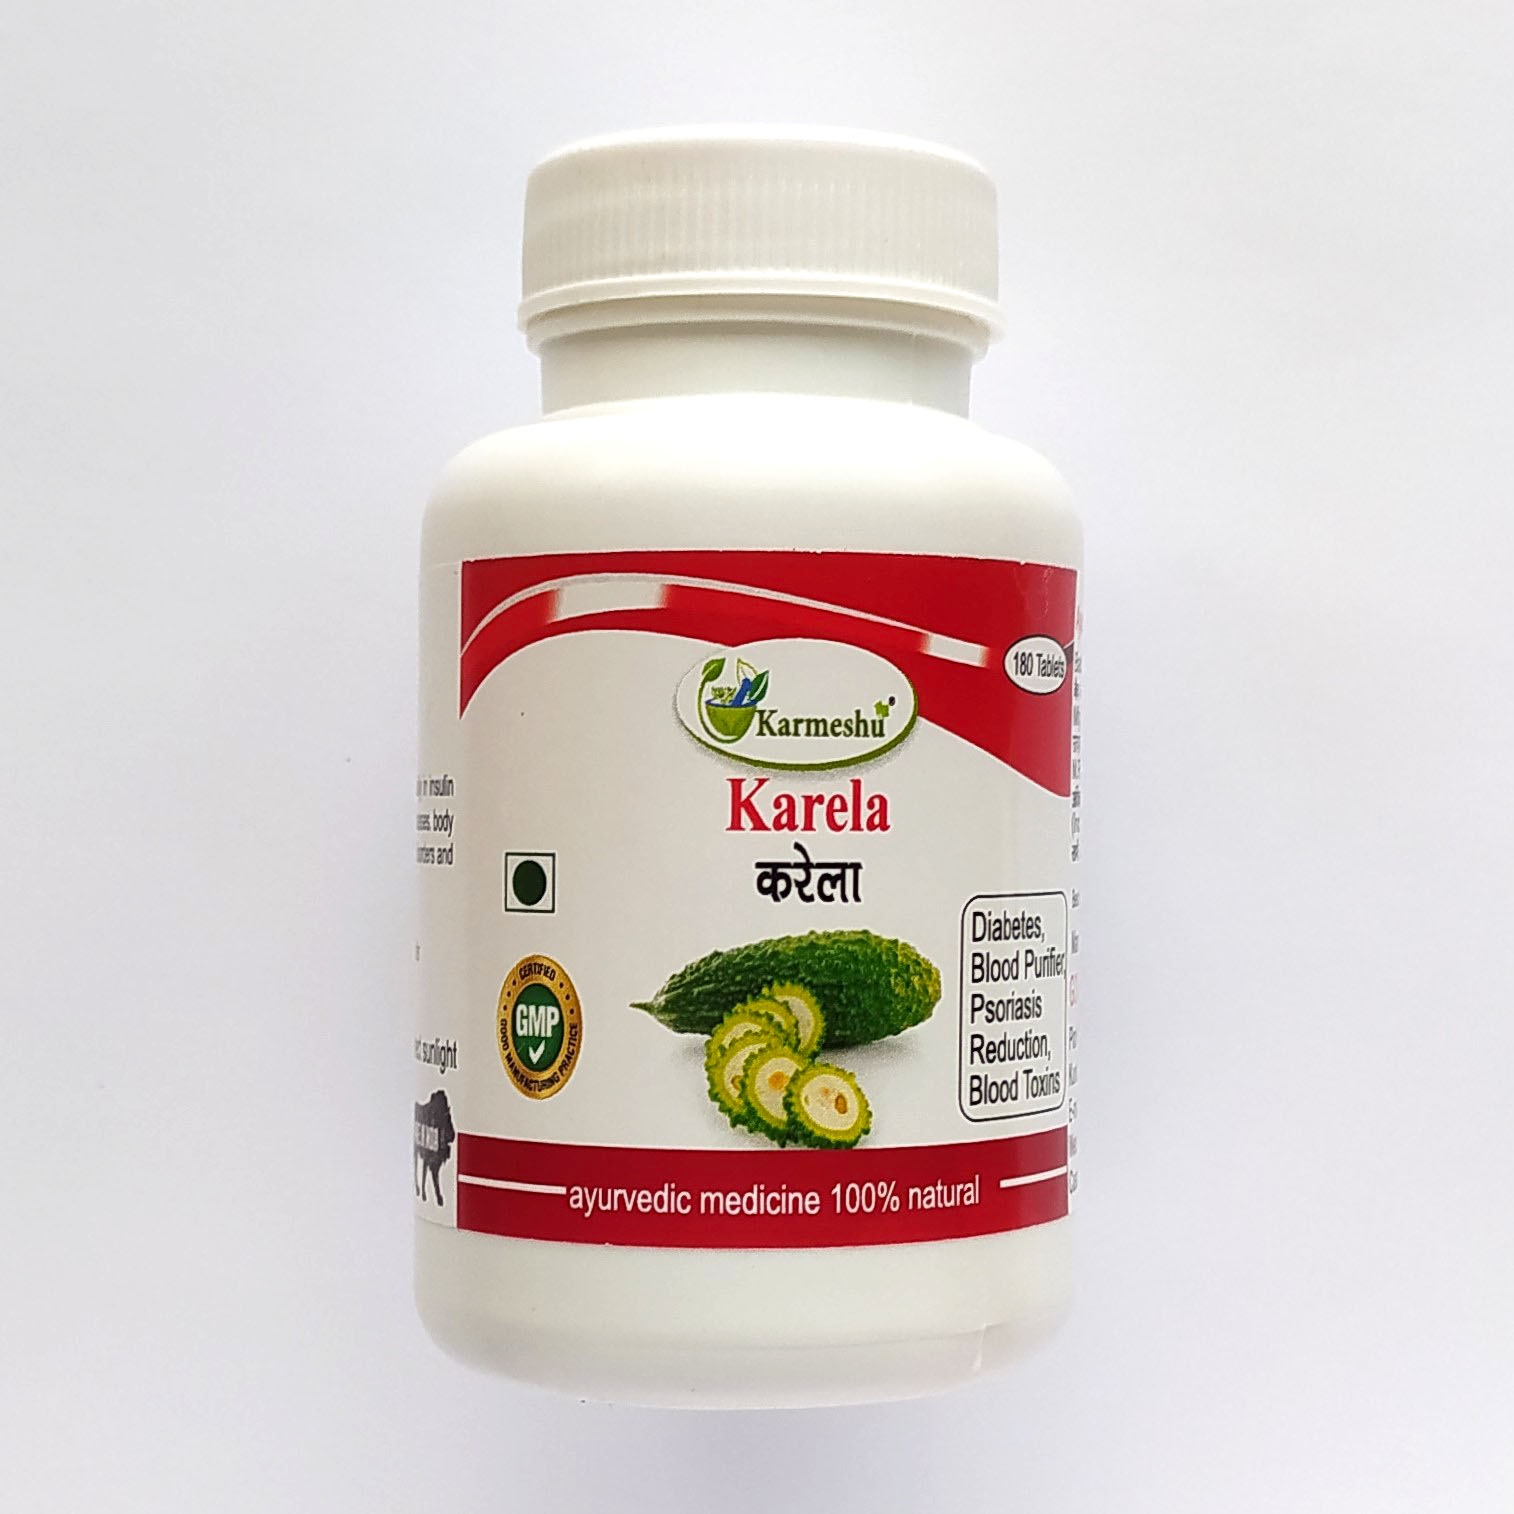 KARELA, Karmeshu (КАРЕЛА, Помогает регулировать уровень сахара в крови, Кармешу), 180 таб. по 500 мг.